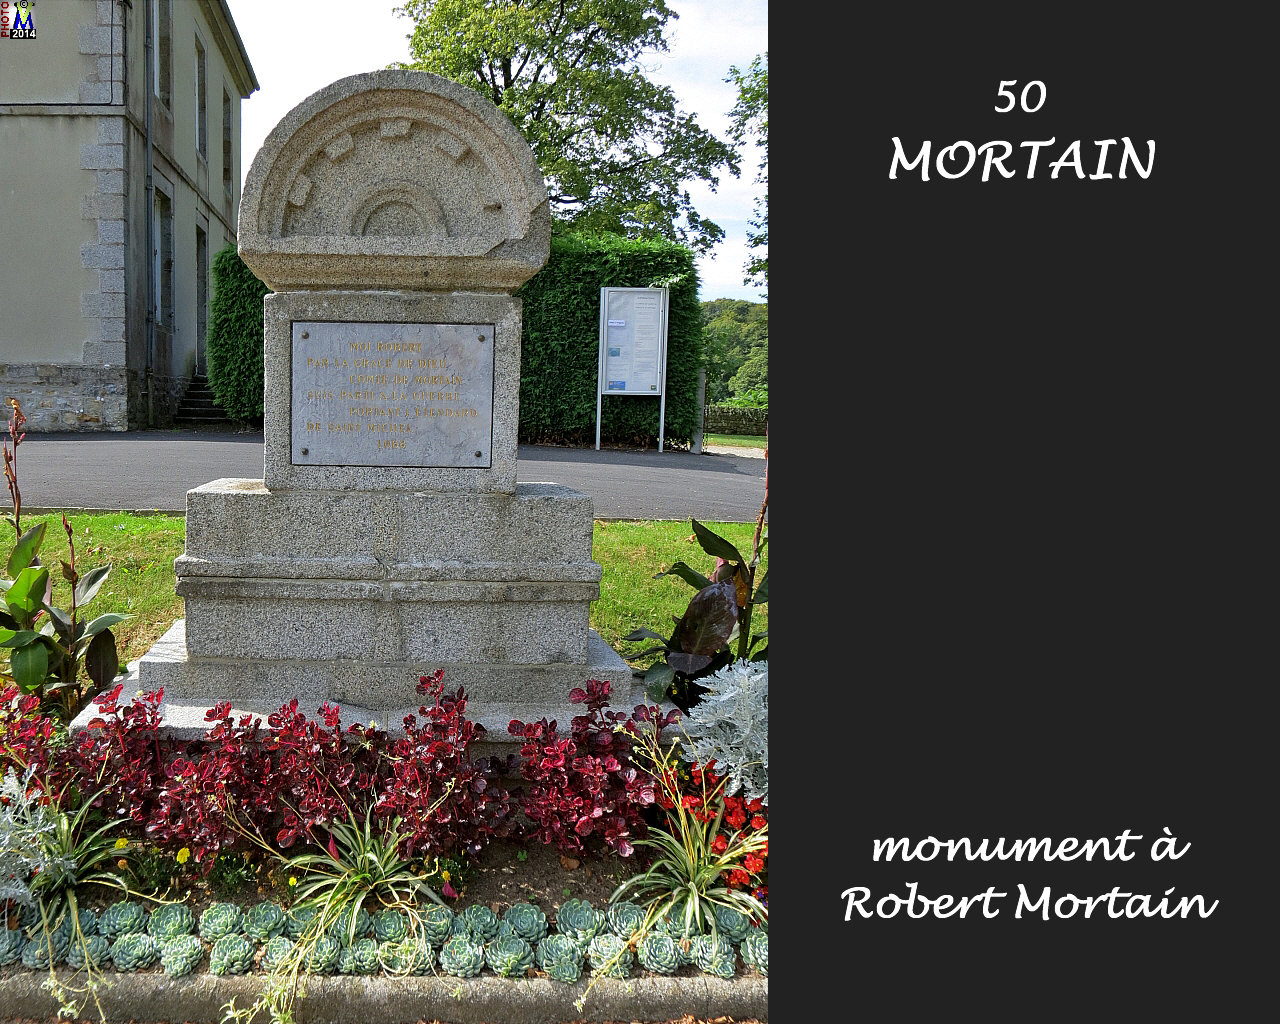 50MORTAIN_monument_100.jpg